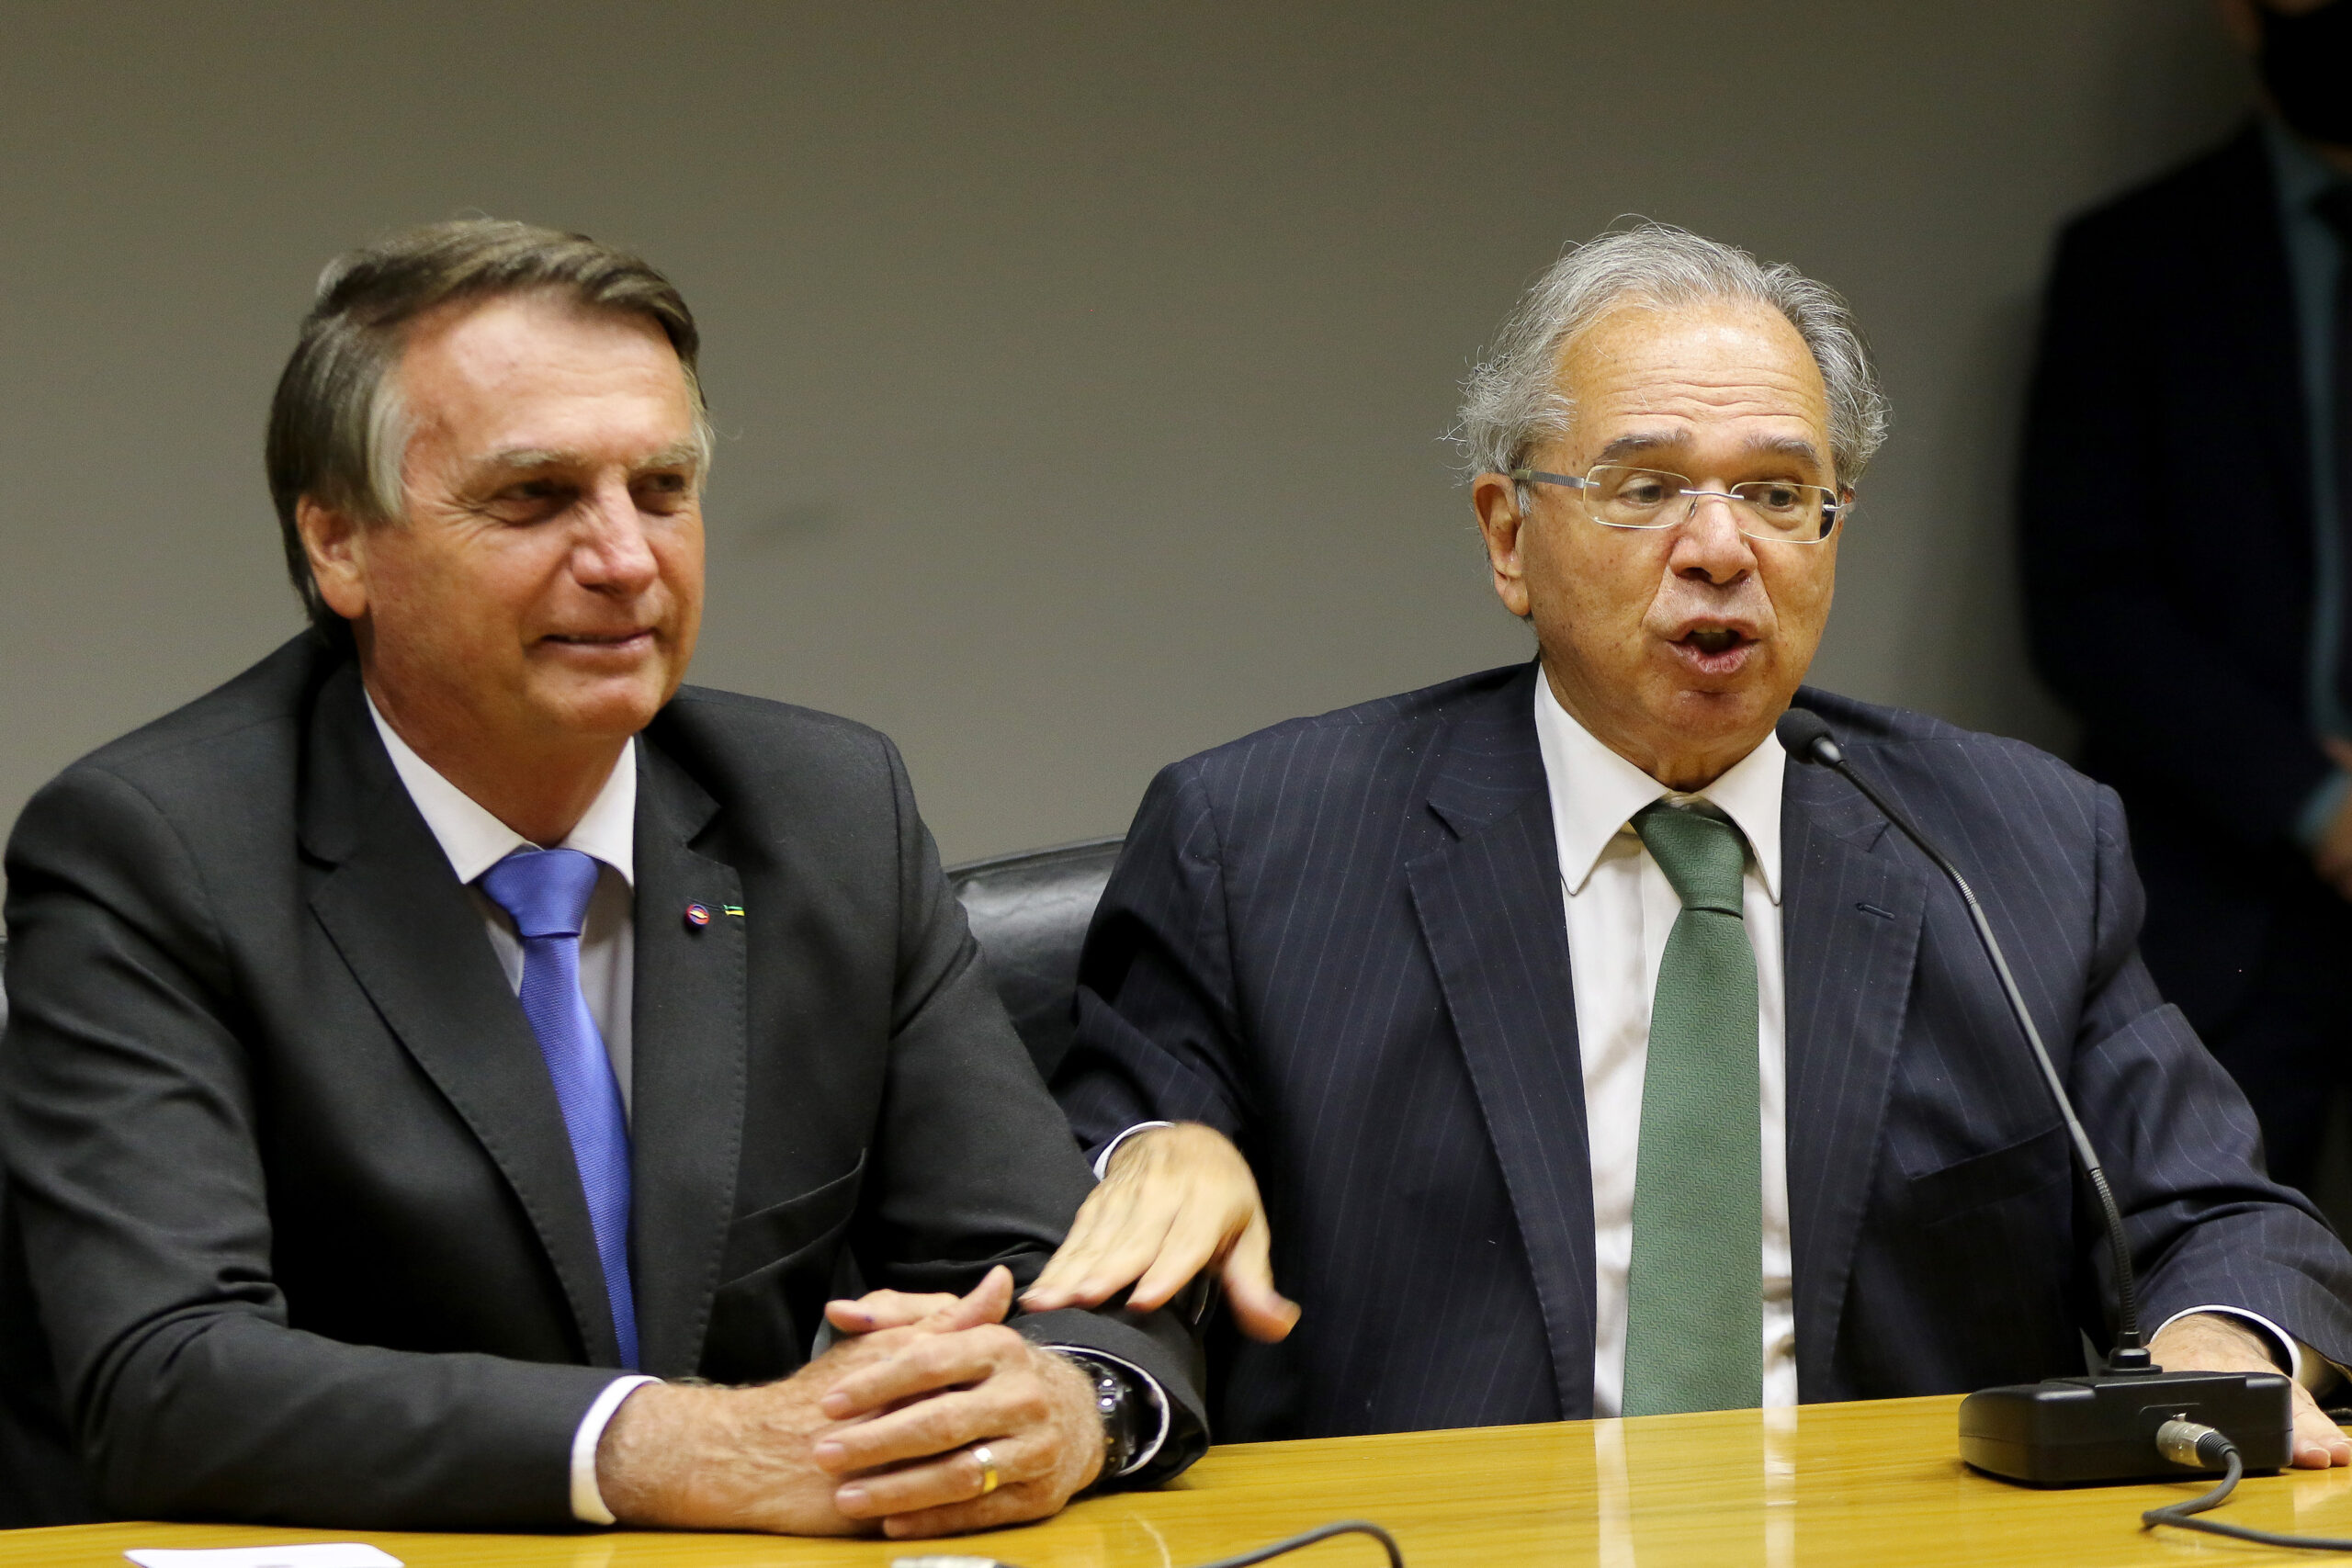 O presidente da República, Jair Bolsonaro, junto com o ministro da Economia, Paulo Guedes, em declaração conjunta à imprensa em outubro de 2021. Foto.: Wilson Dias/Agência Brasil.